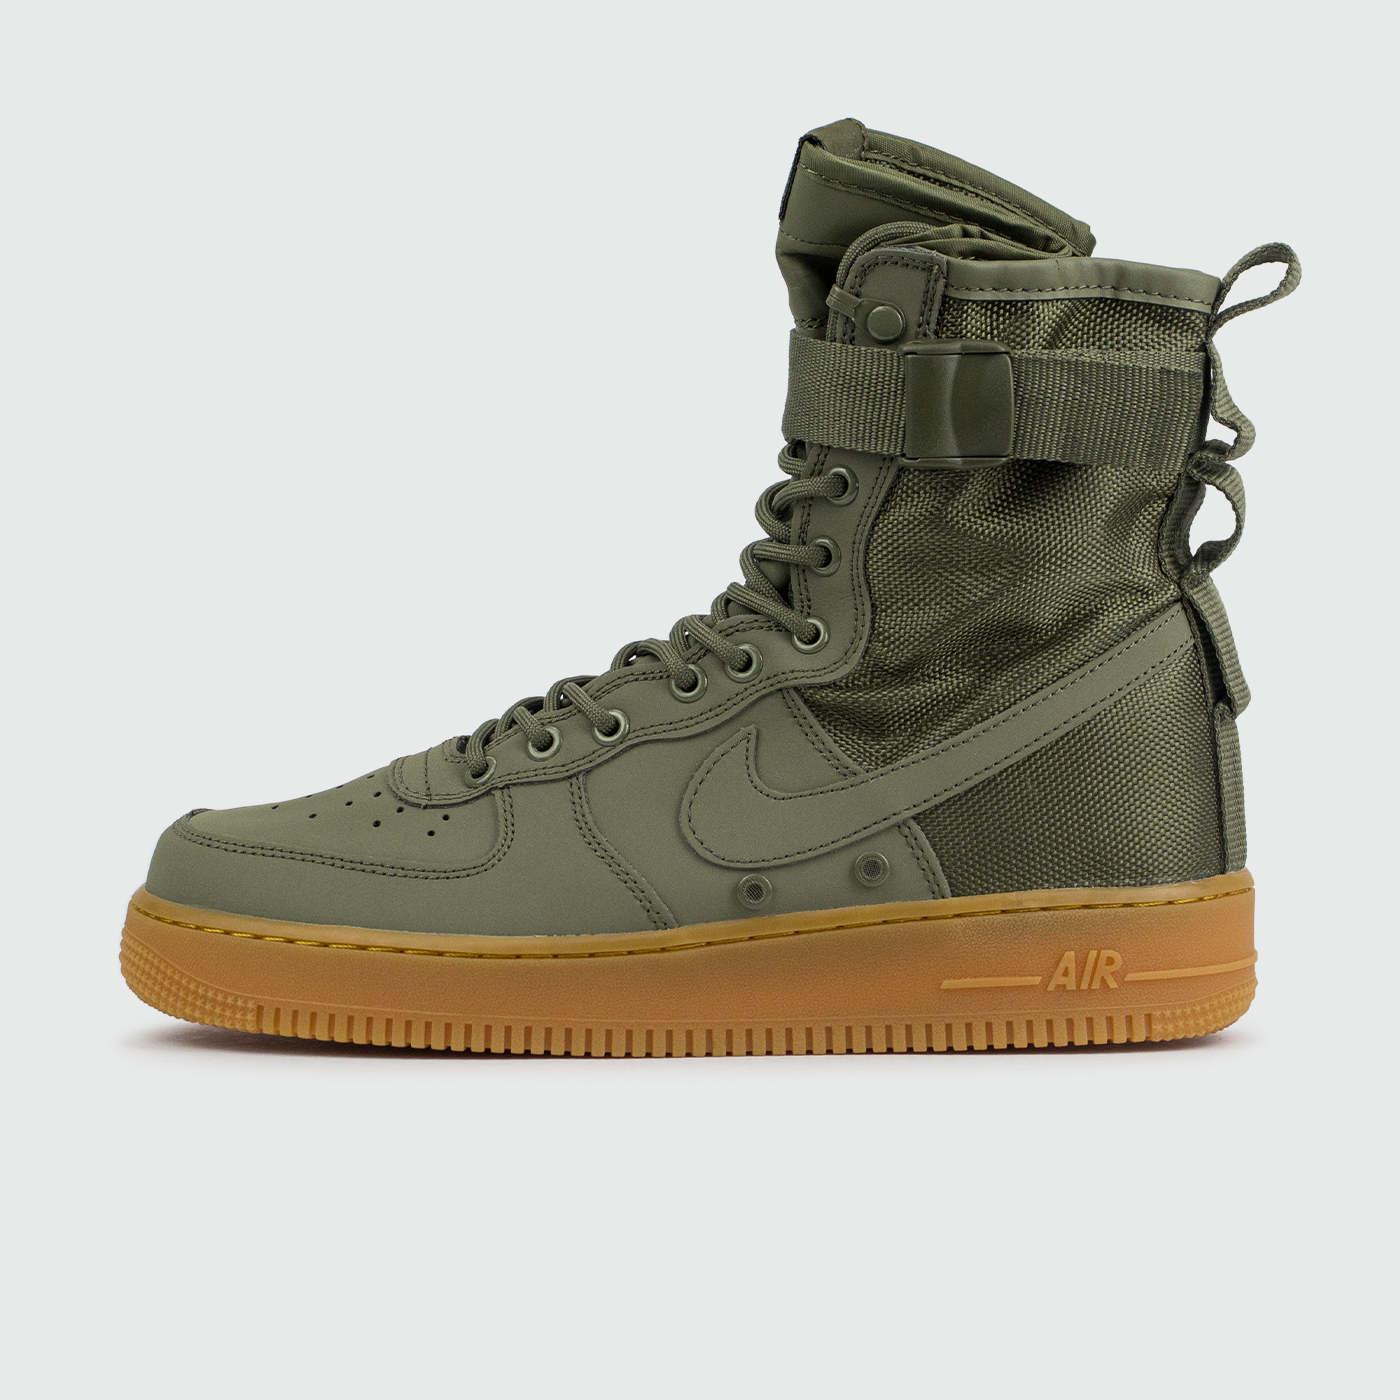 Nike SF Air Force 1 High Green / Gum